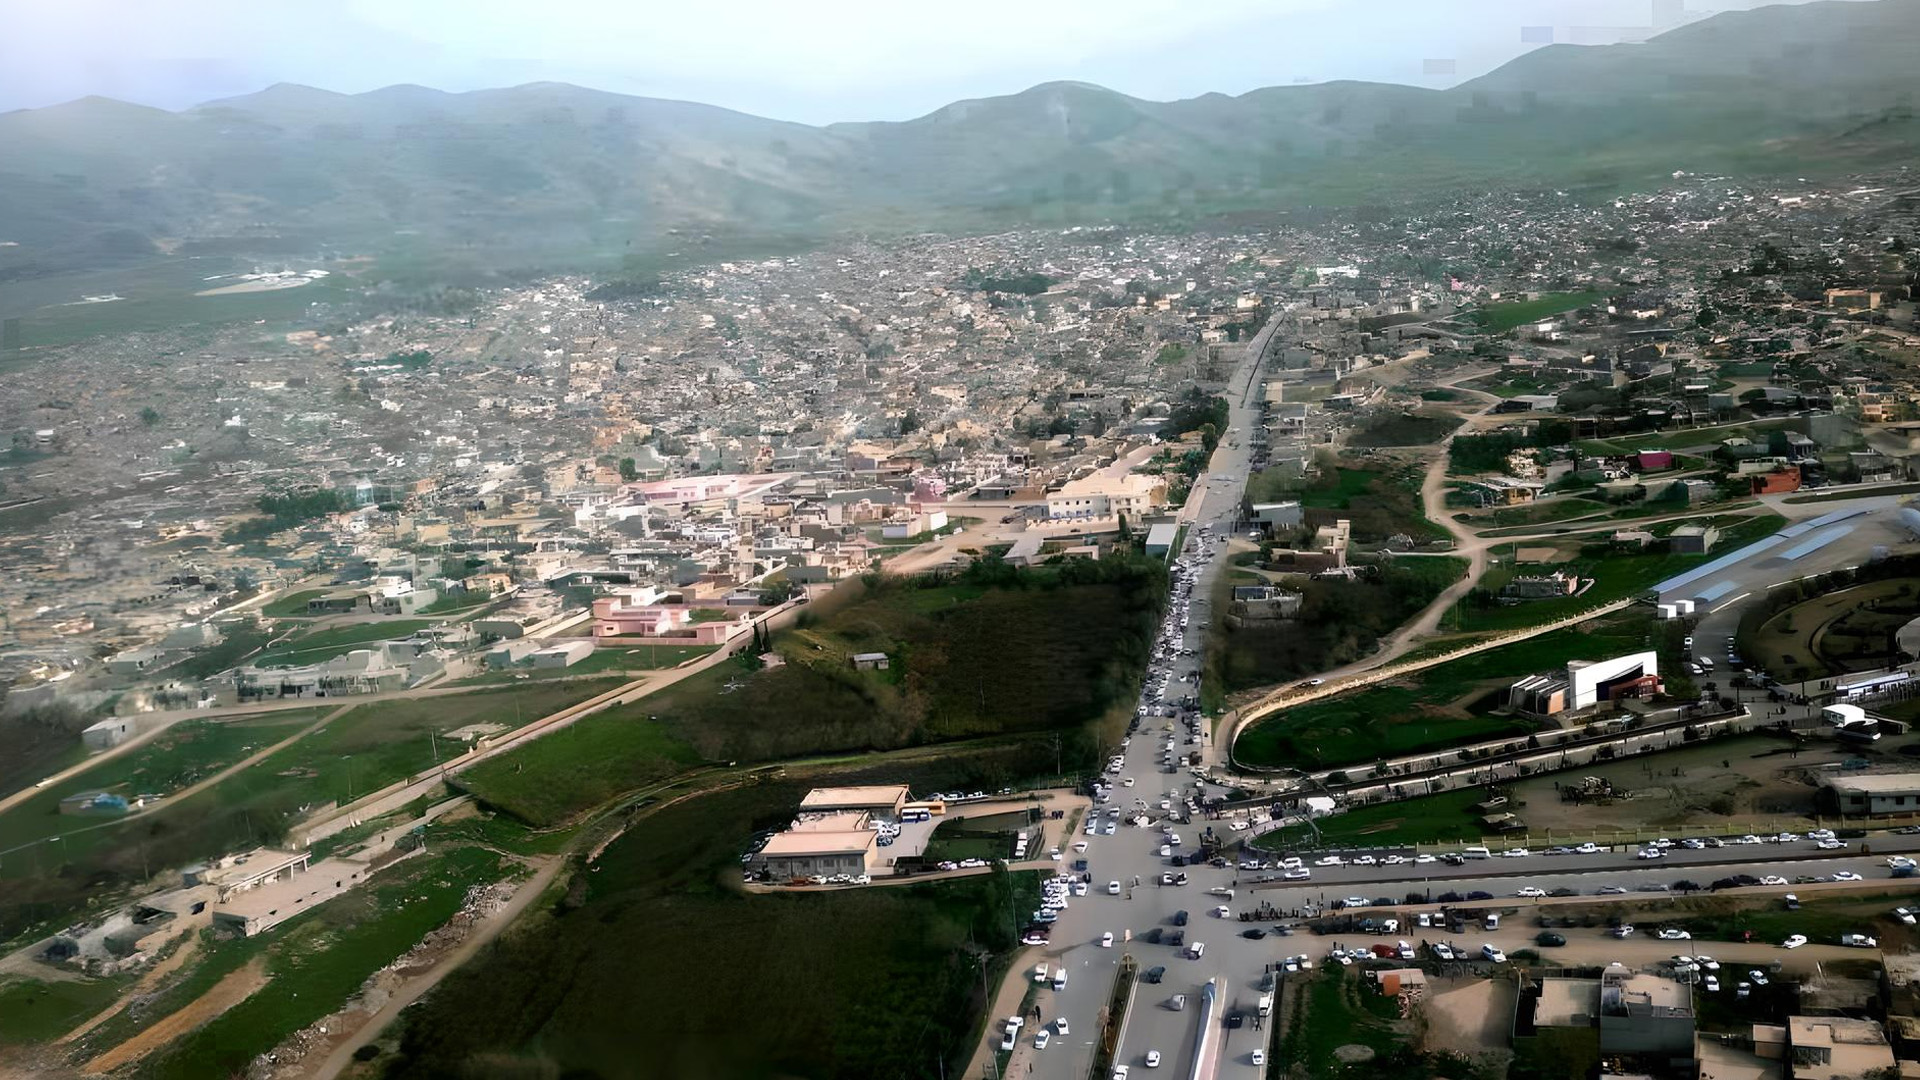  The city of Halabja